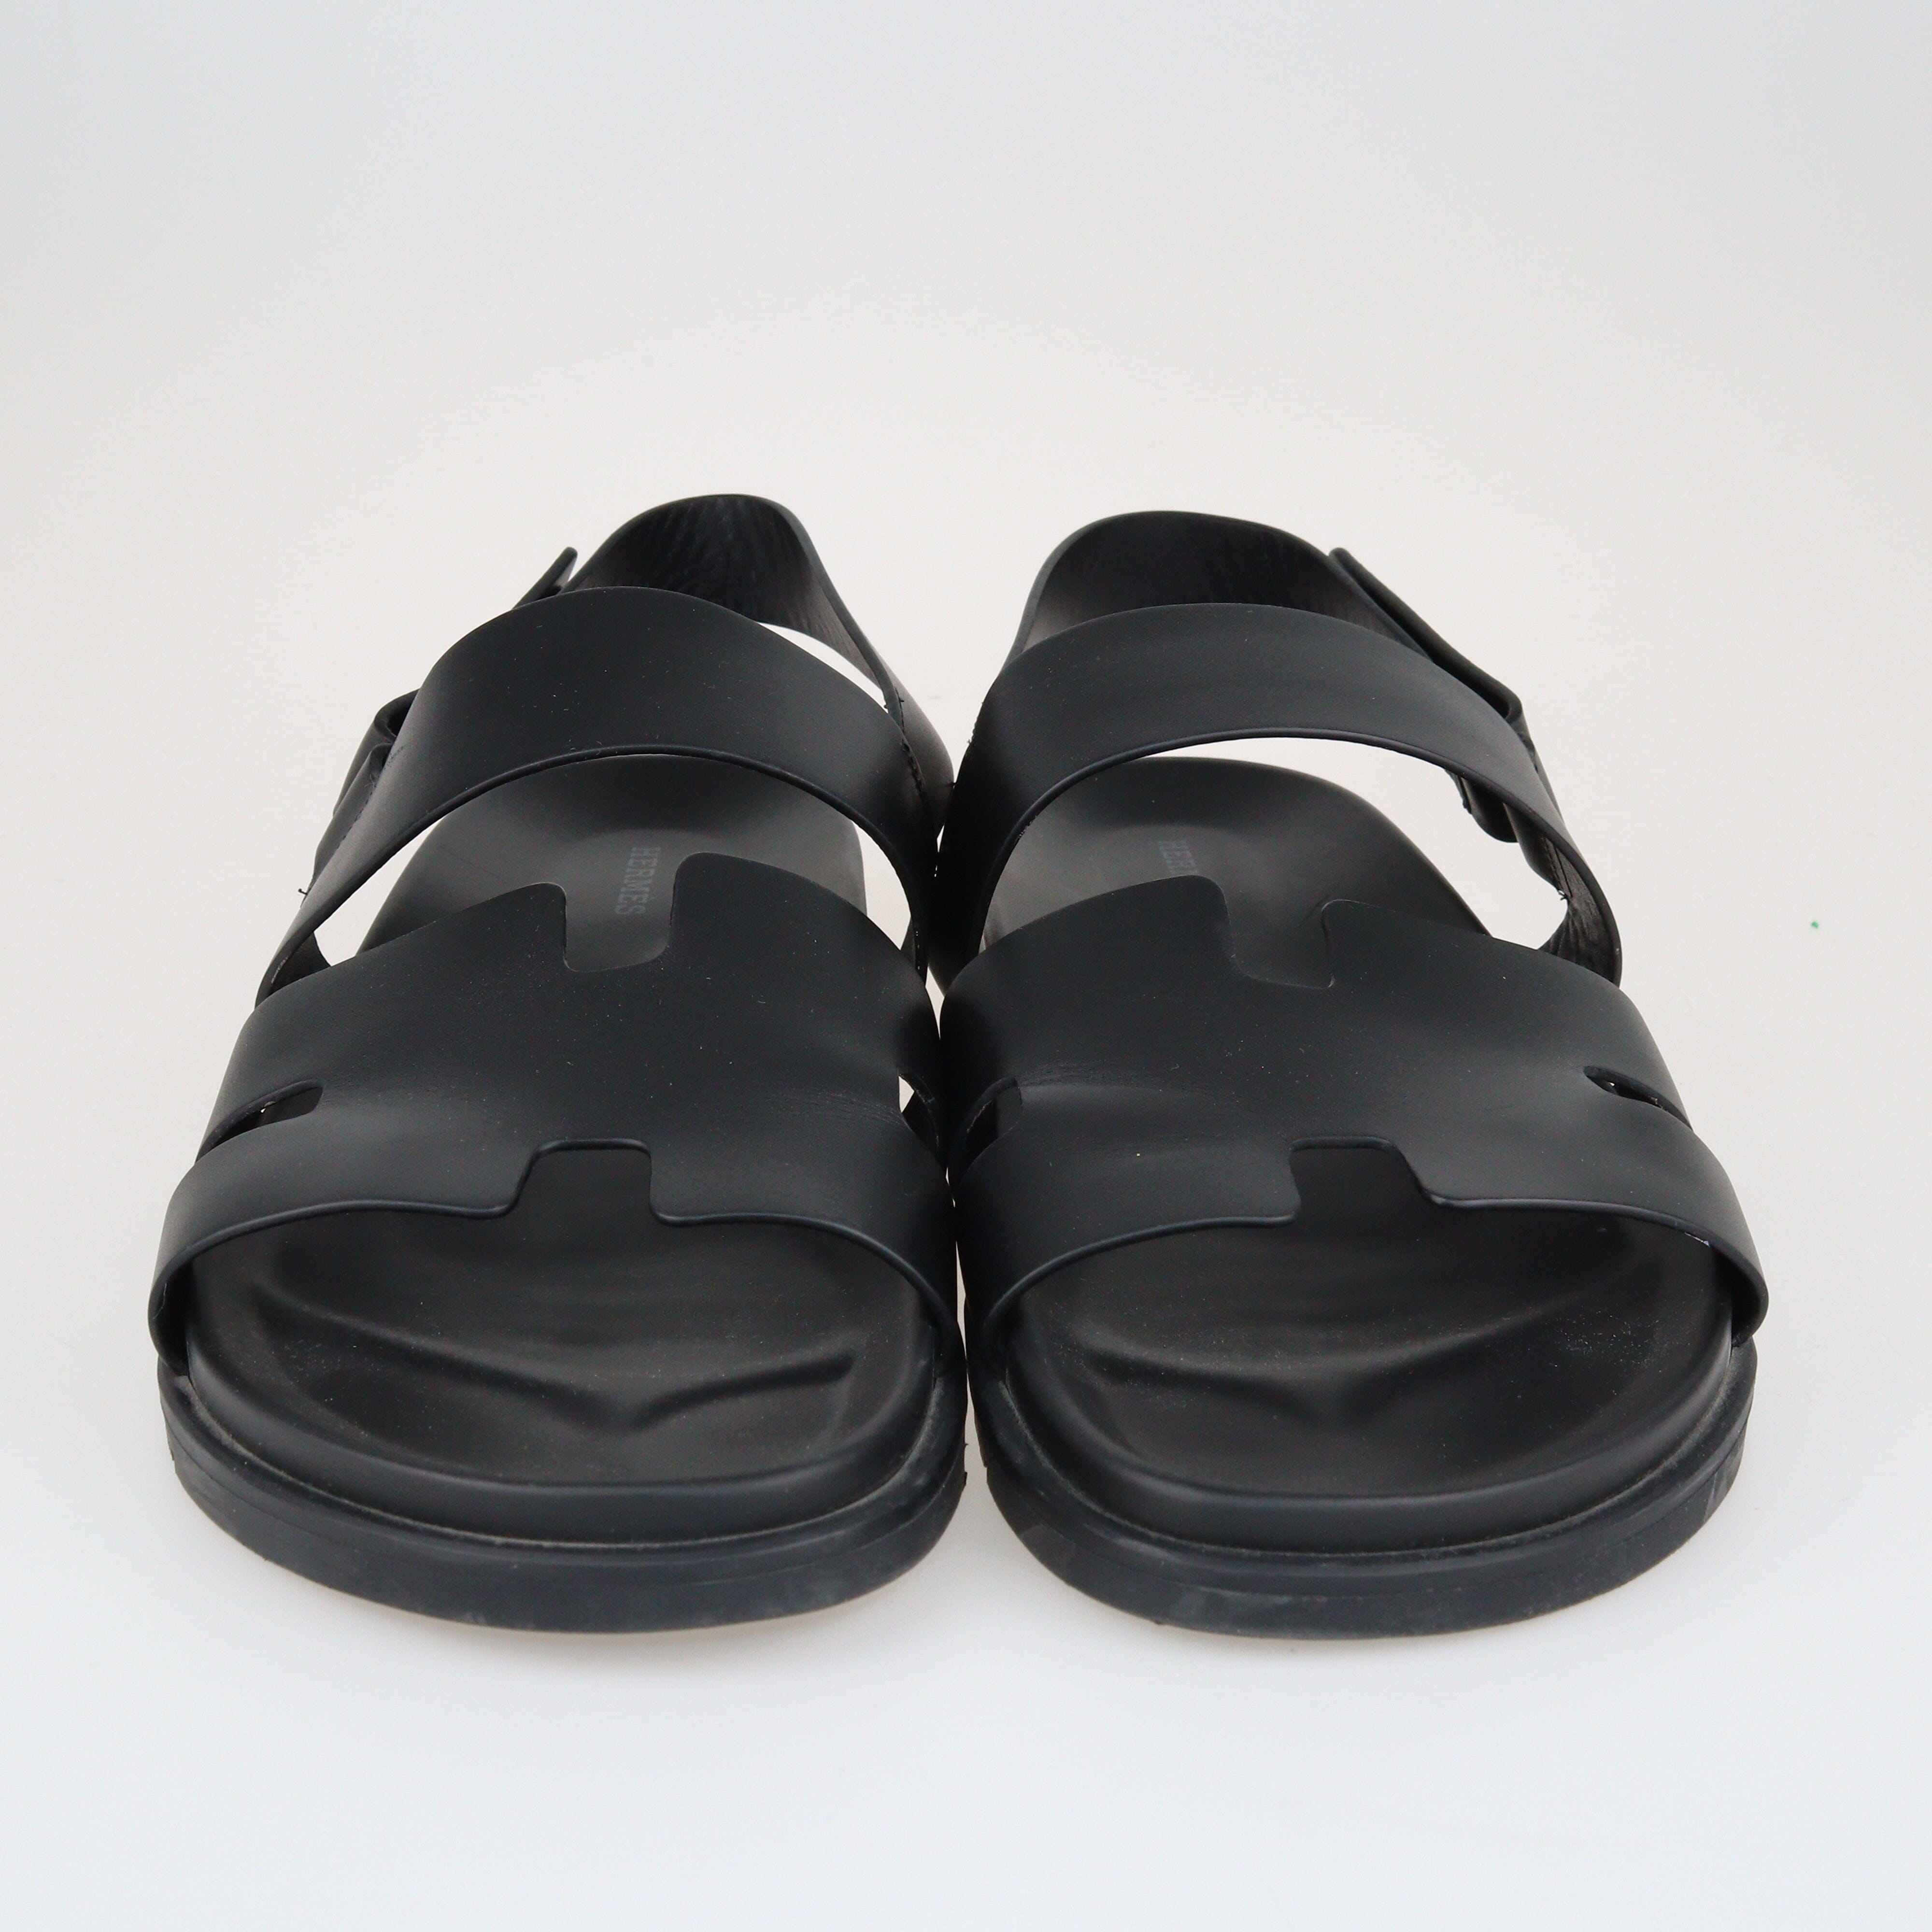 Black Genius Sandals Shoes Hermes 